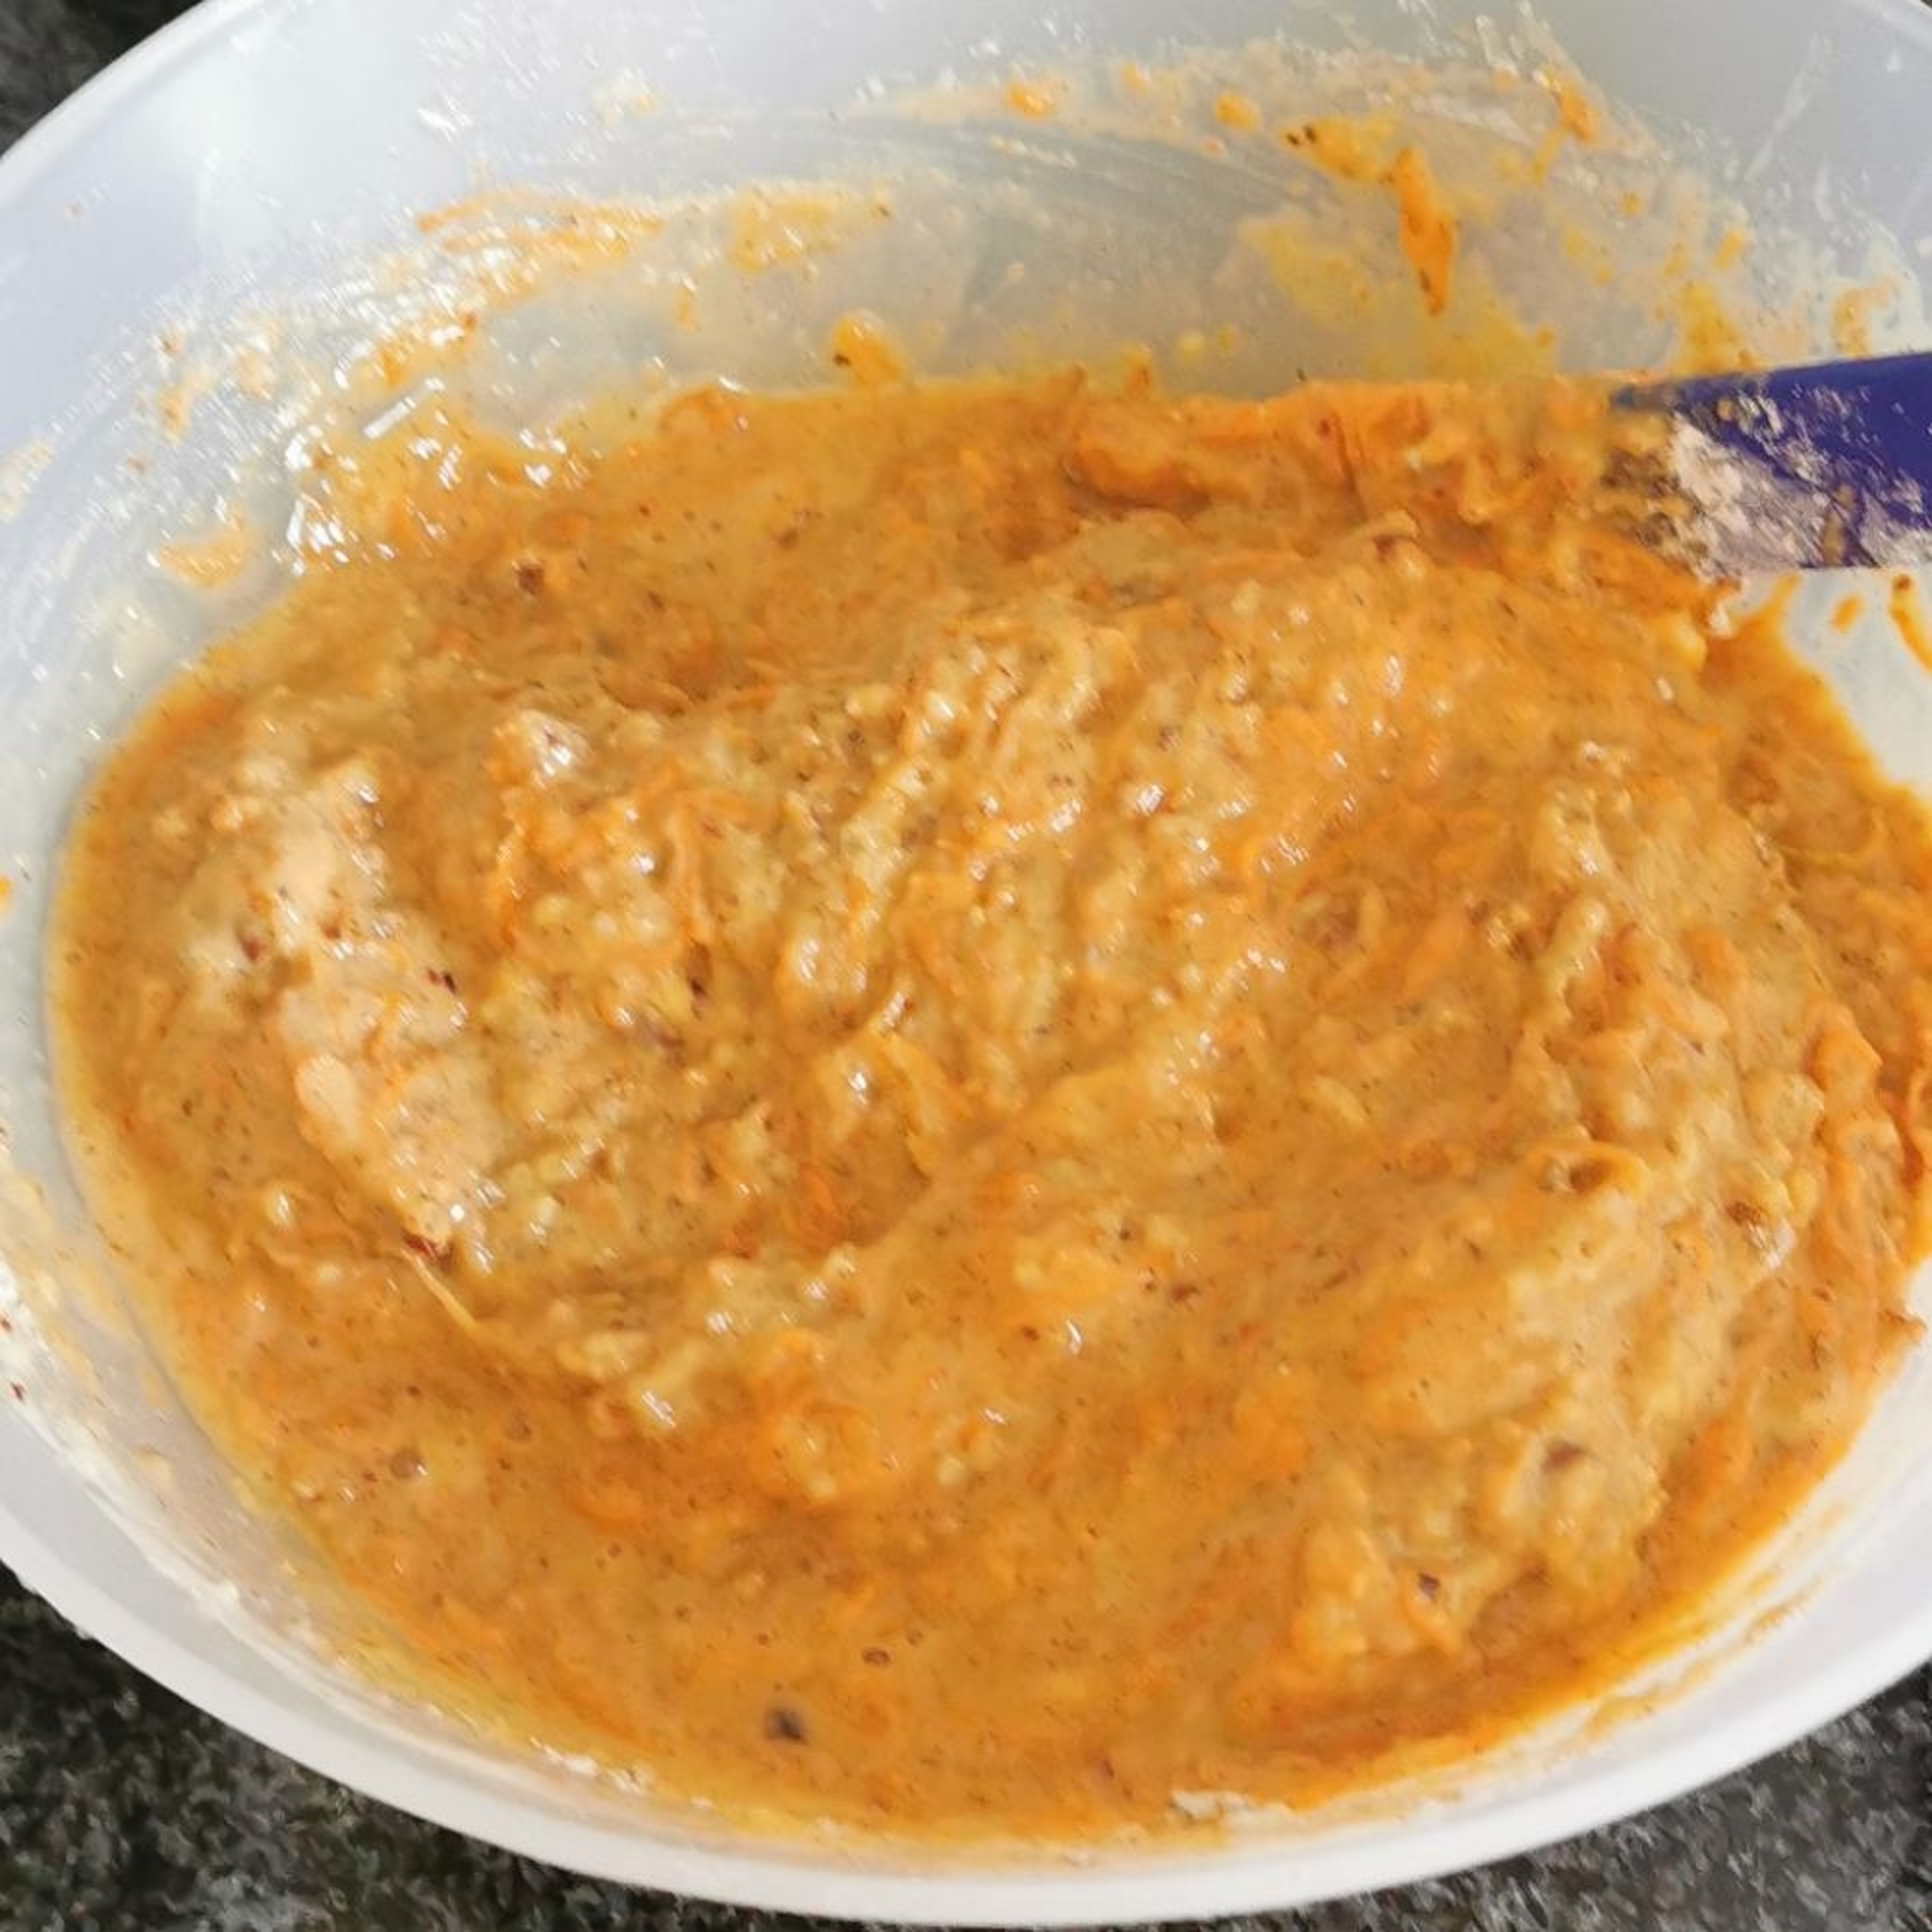 Karotten fein reiben und zur Mischung geben. Joghurt und Salz dazu geben und kurz unterrühren. Backofen auf 185 Grad Umluft vorheizen.